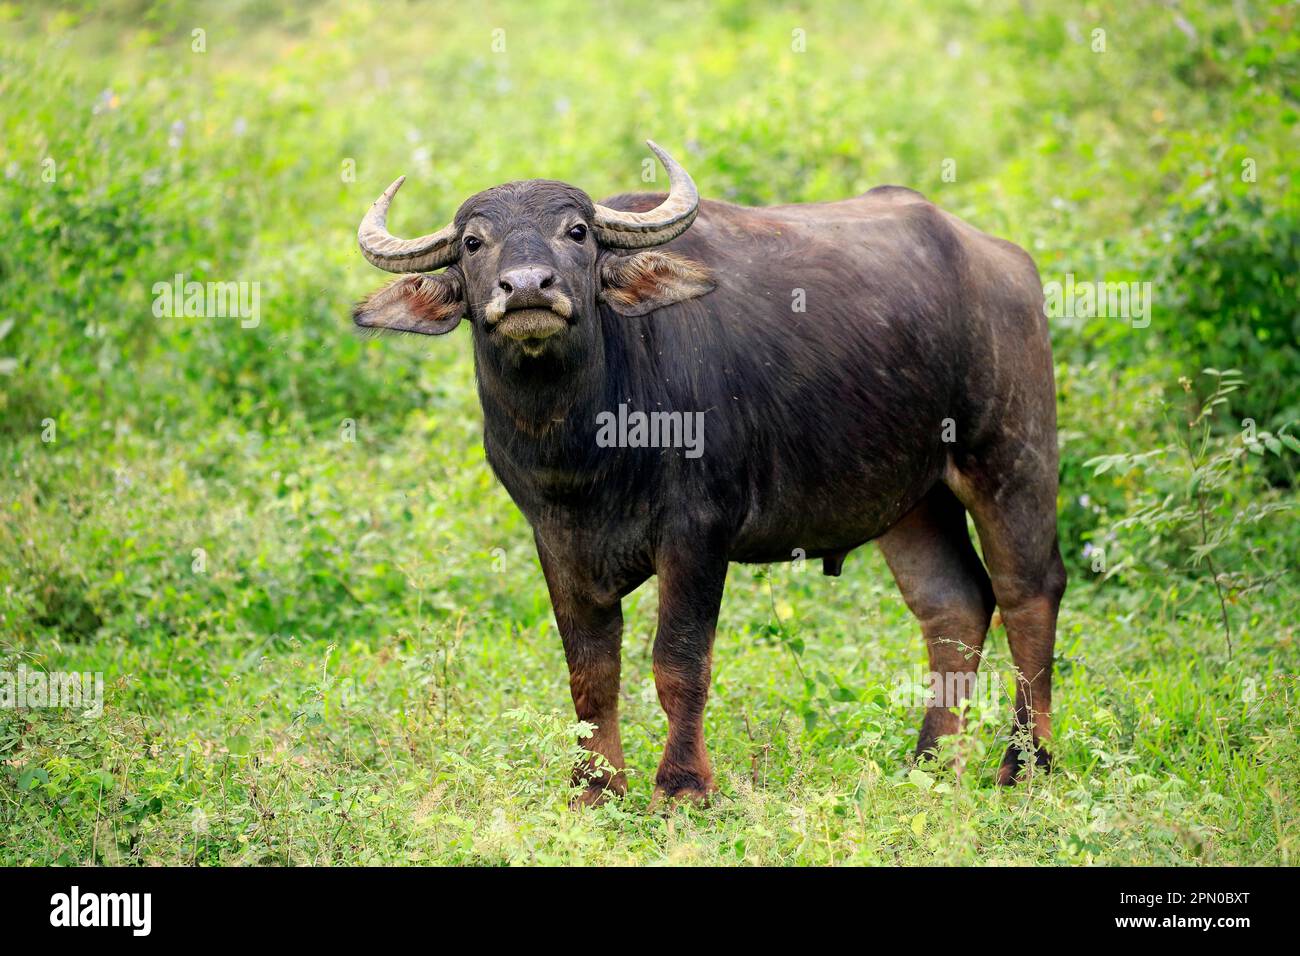 Water buffalo (Bubalus arnee), semi-adult young, Yala National Park, Sri Lanka Stock Photo